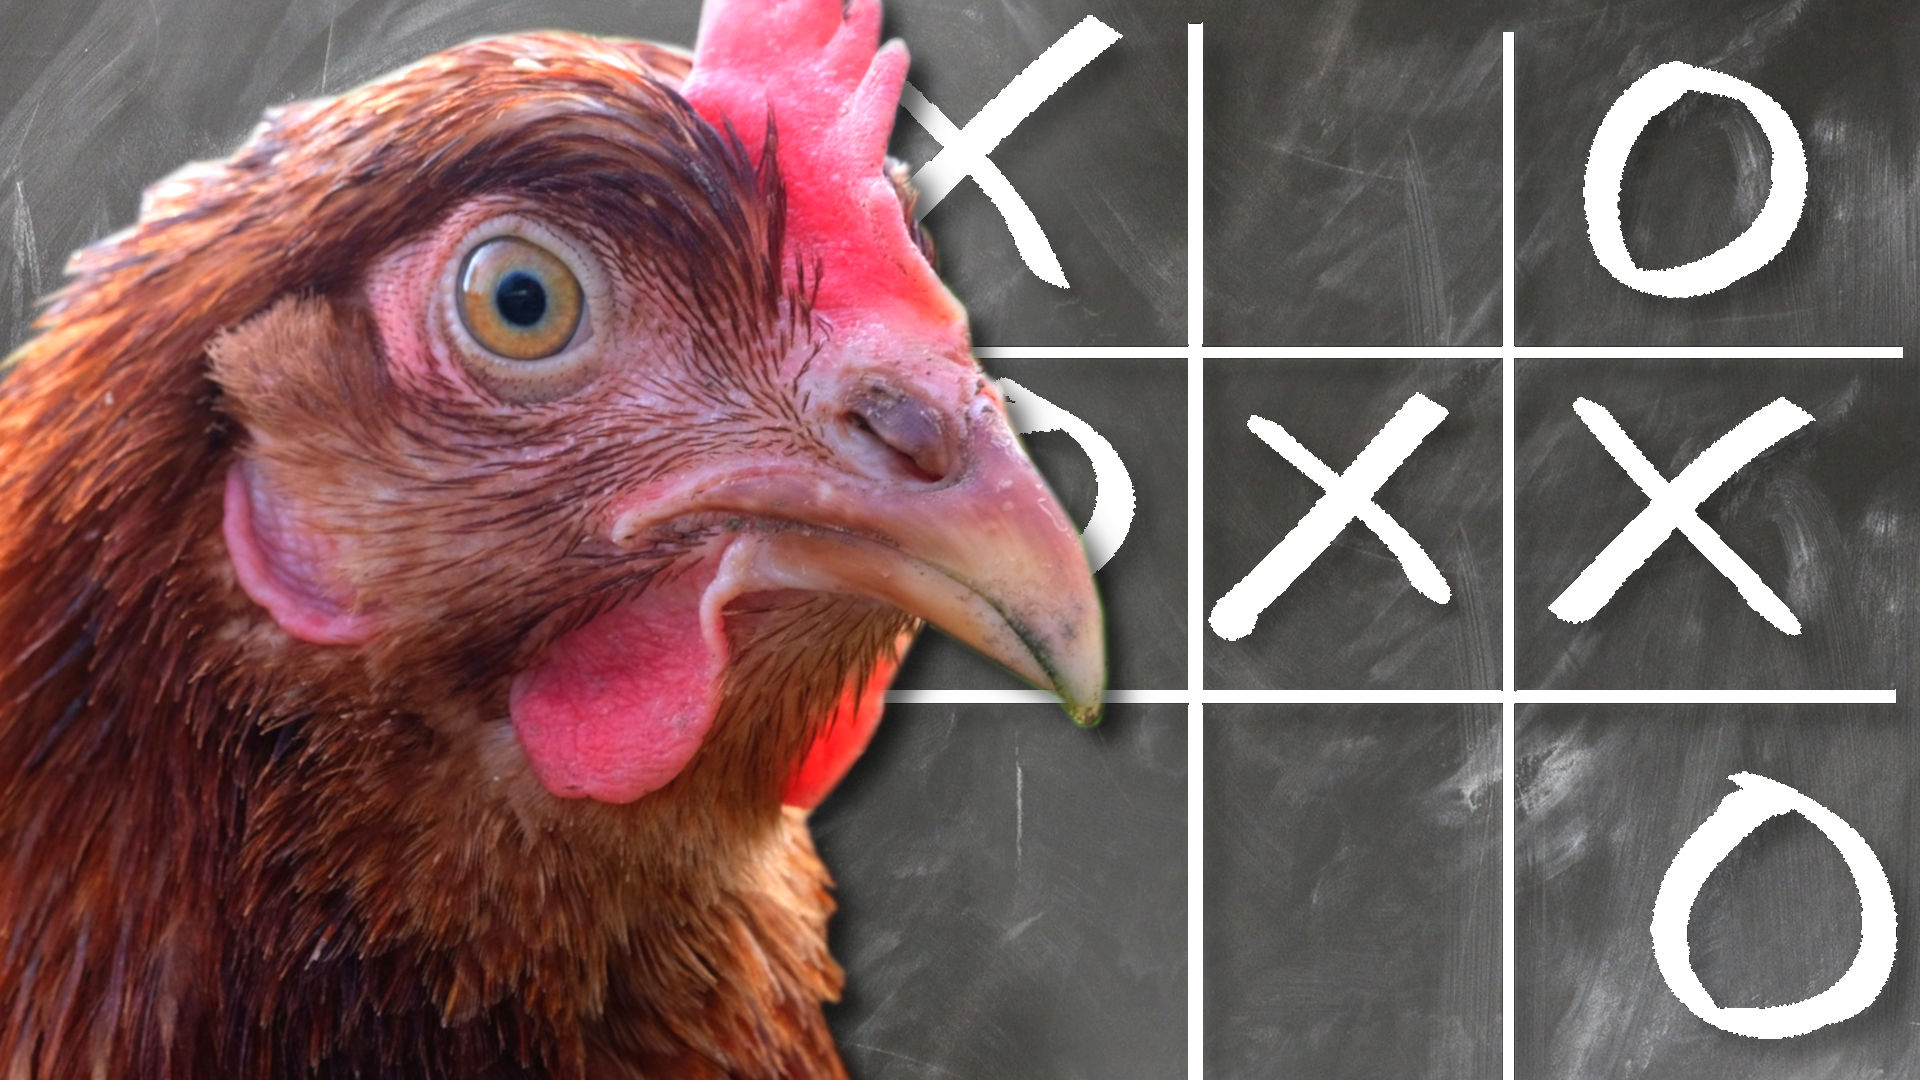 Collage als Symbolbild. Zu sehen ist der Kopf eines Huhns, welches wachsam und klug blickt. Im Hintergrund ist stilisiert eine Tafel zu sehen, auf welcher ein Tic-Tac-Toe-Spiel dargestellt ist. 